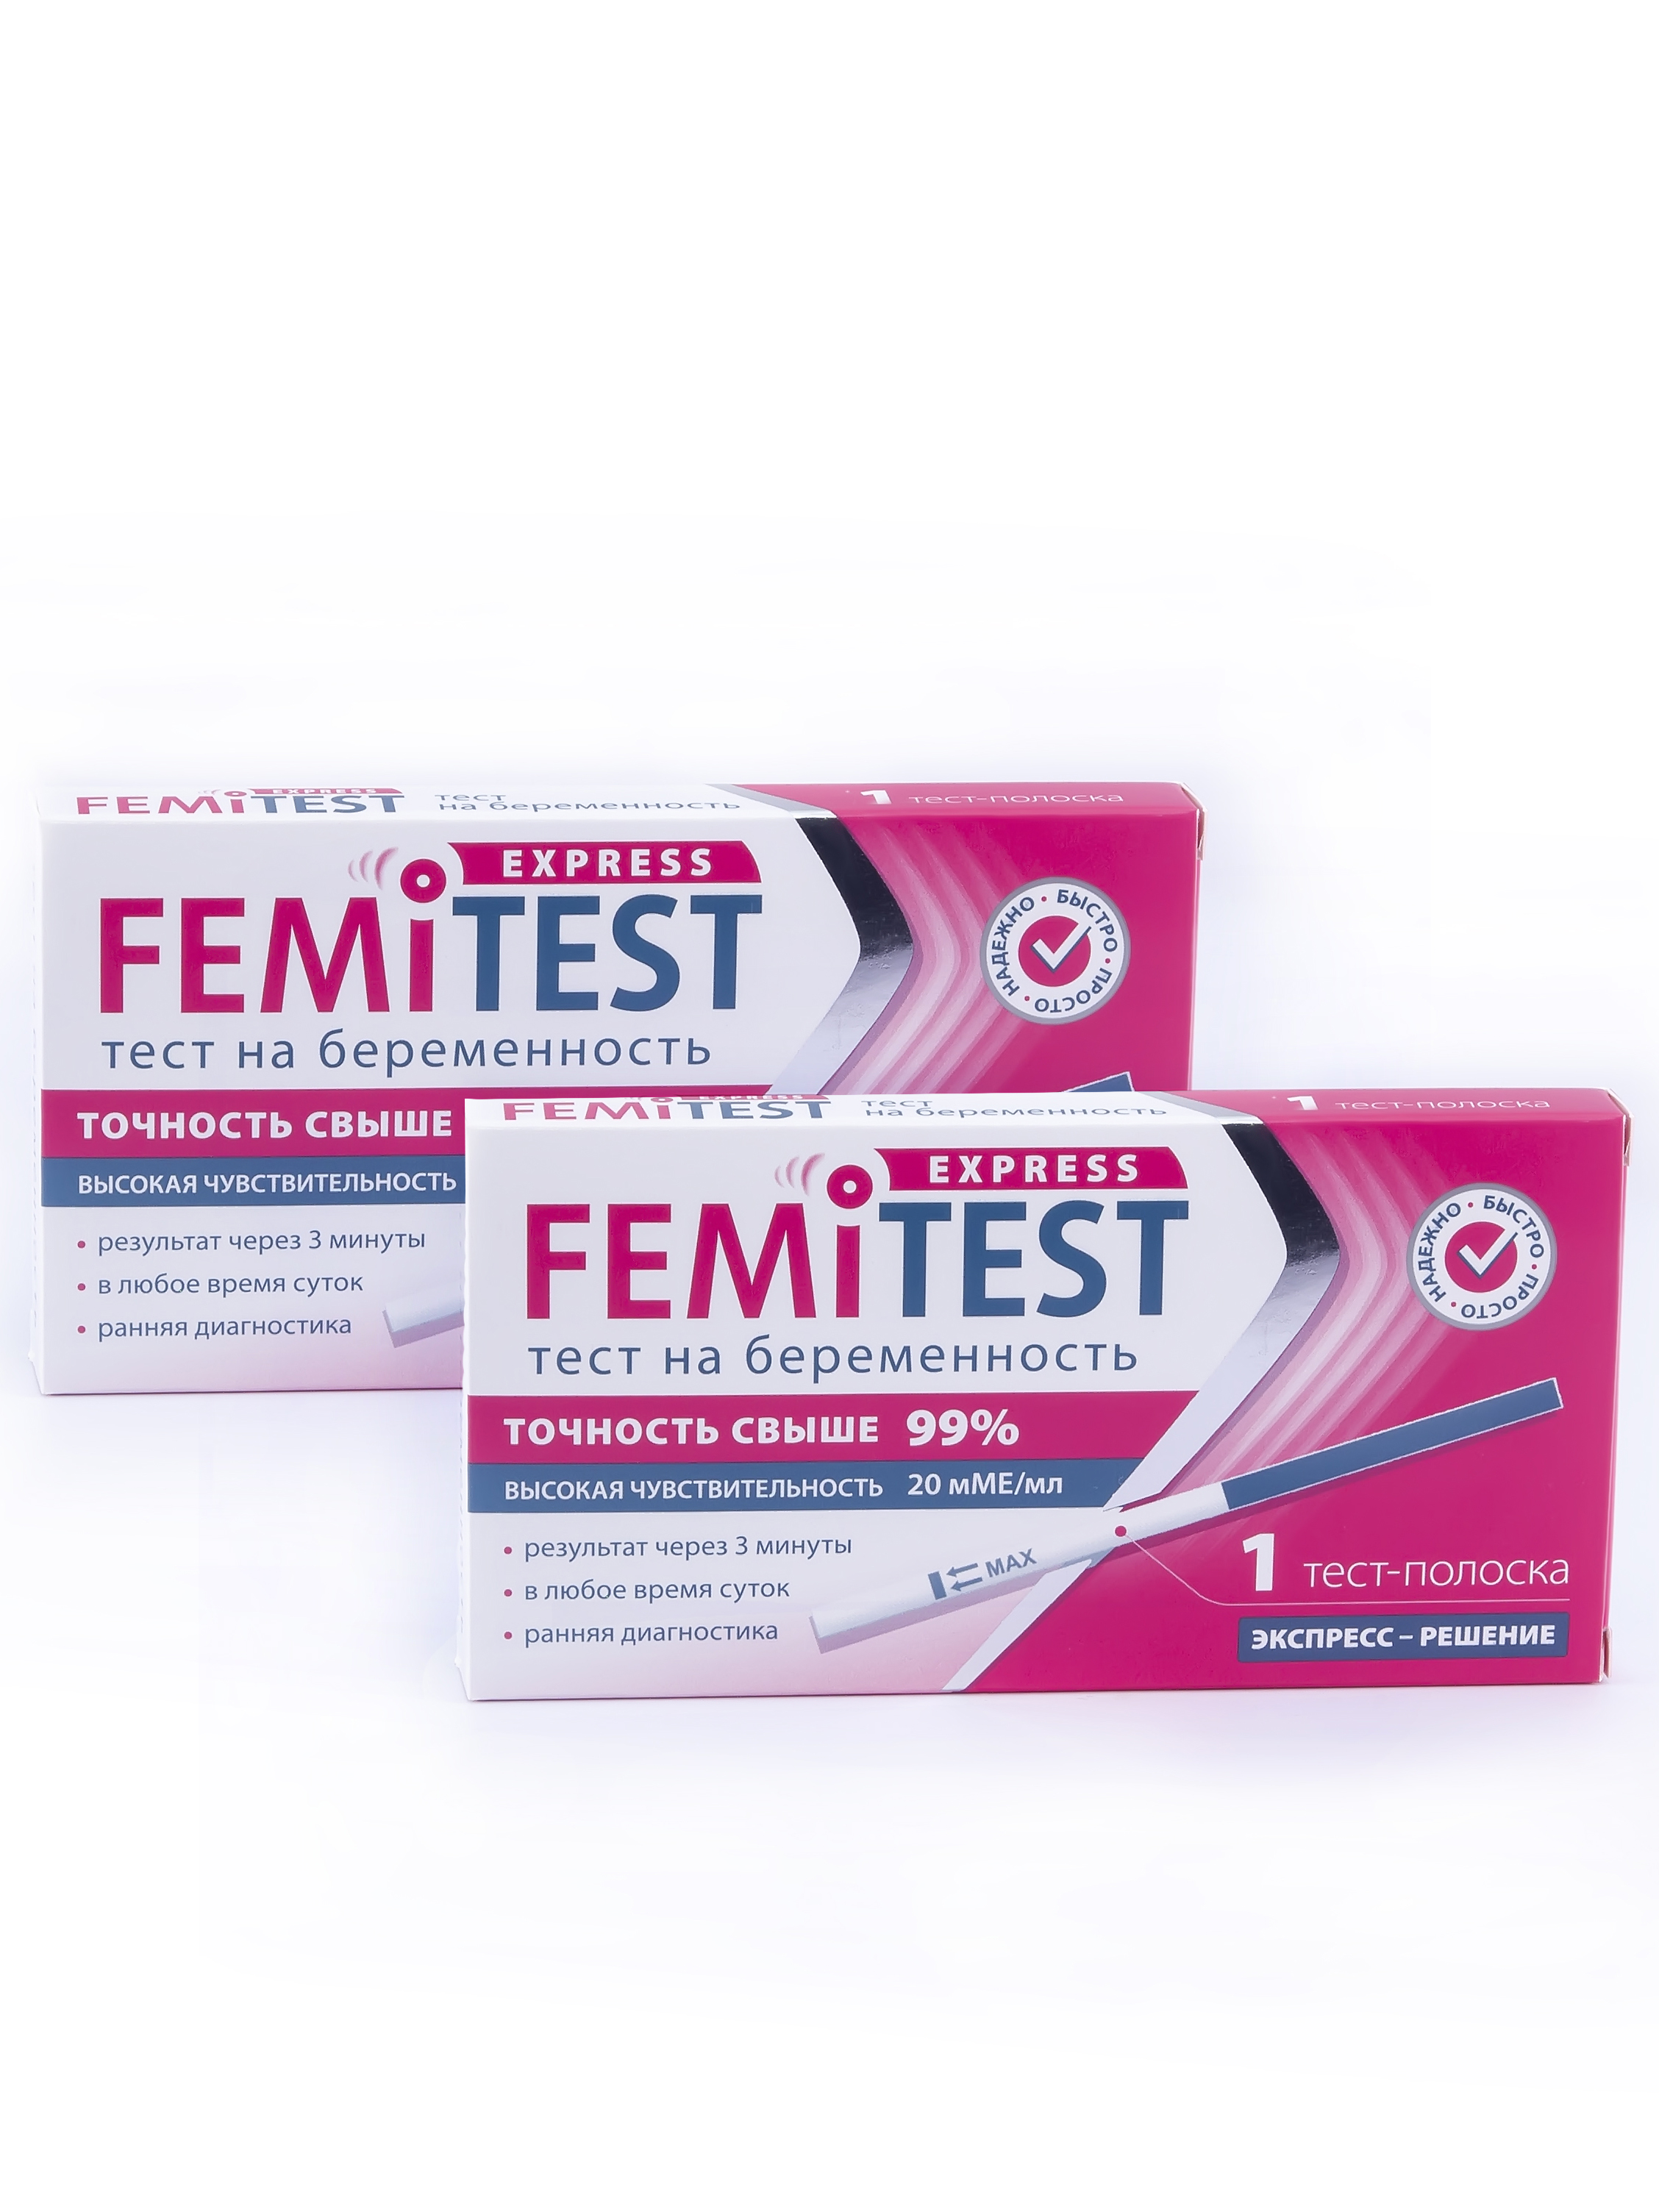 Купить FEMiTEST Express Тест для определения беременности тест-полоска спайка 1+1, Тест для определения беременности FEMiTEST Express тест-полоска спайка 1+1 шт.